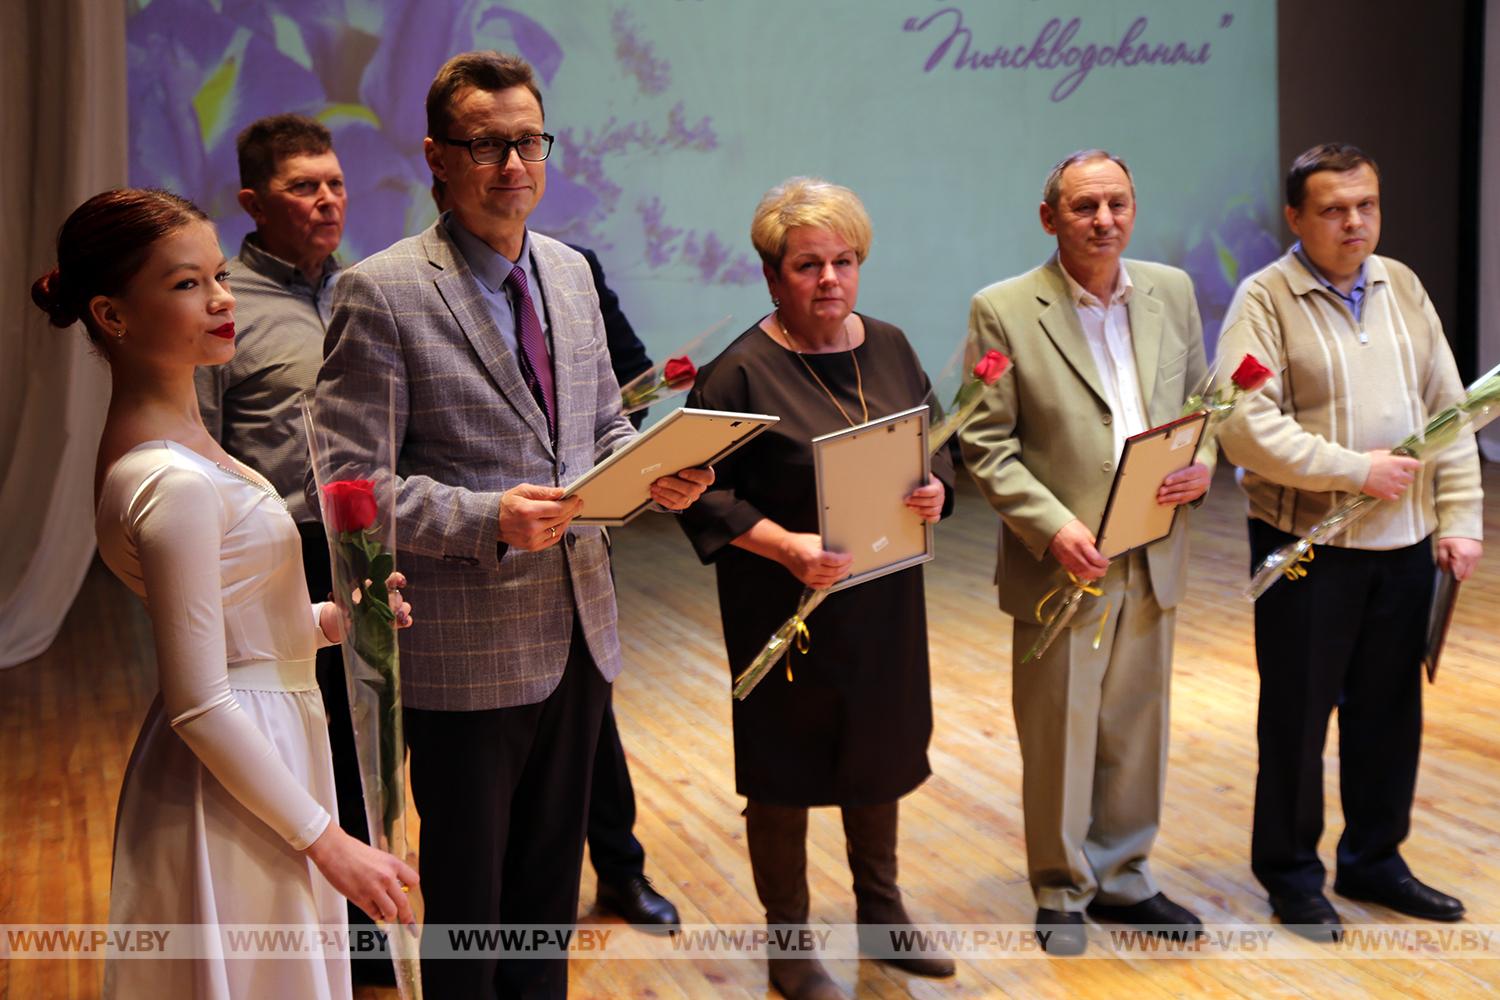 Фоторепортаж: торжественно и красиво свое 75-летие отметил ГП «Пинскводоканал»